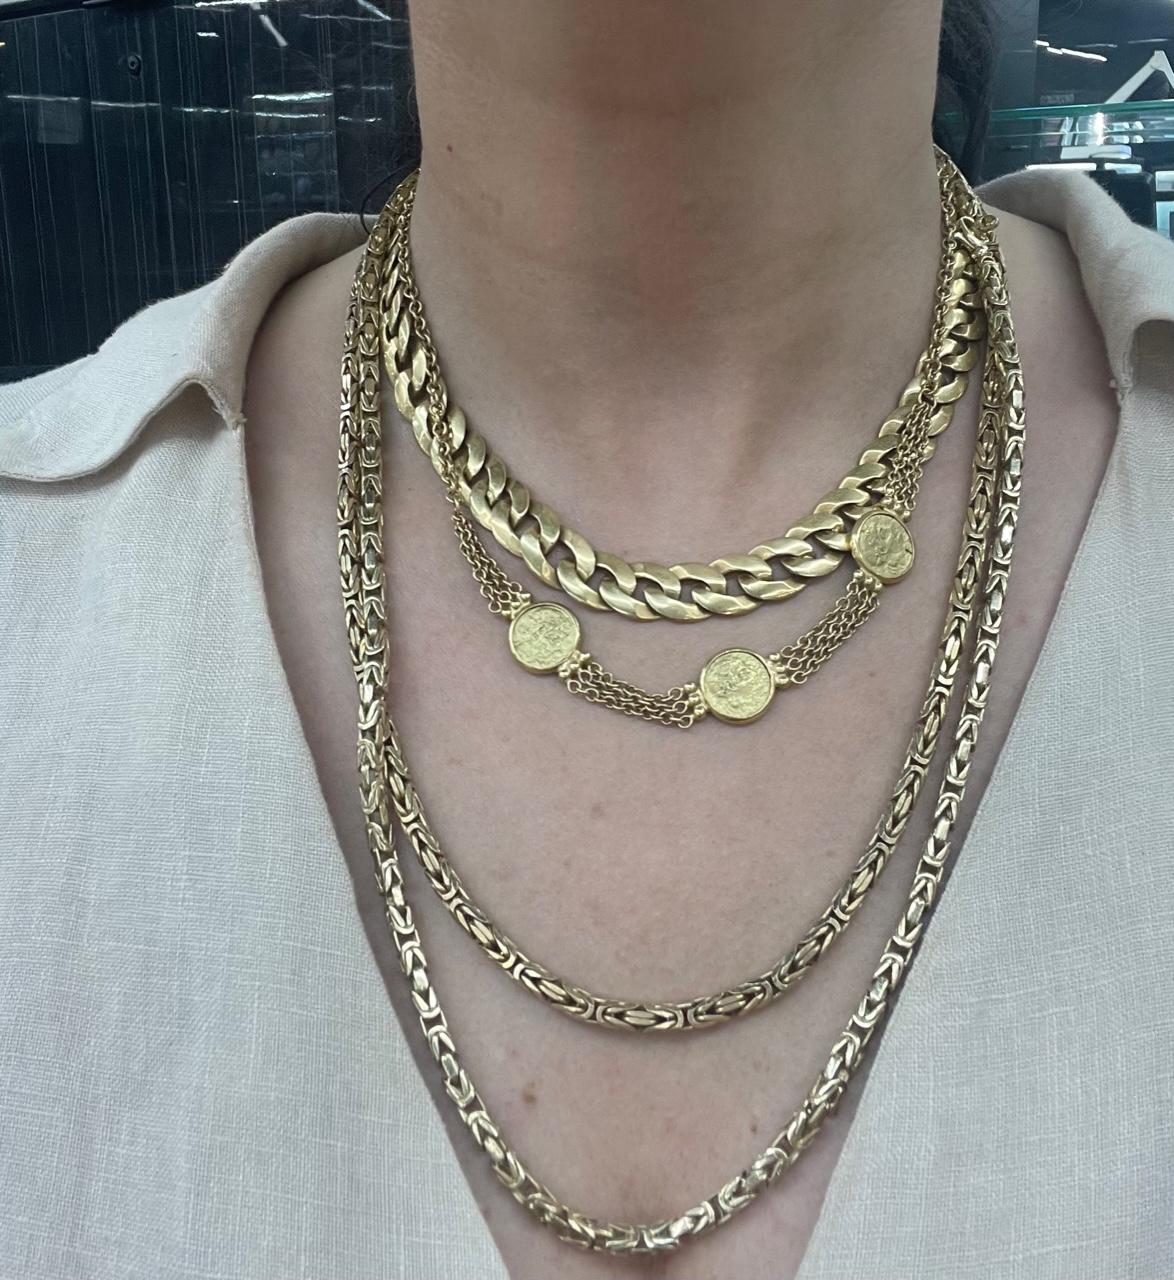 collier en or jaune 14 carats avec un motif de liens byzantins pesant 57.3 grammes, 22 pouces.
Super pour la pose !